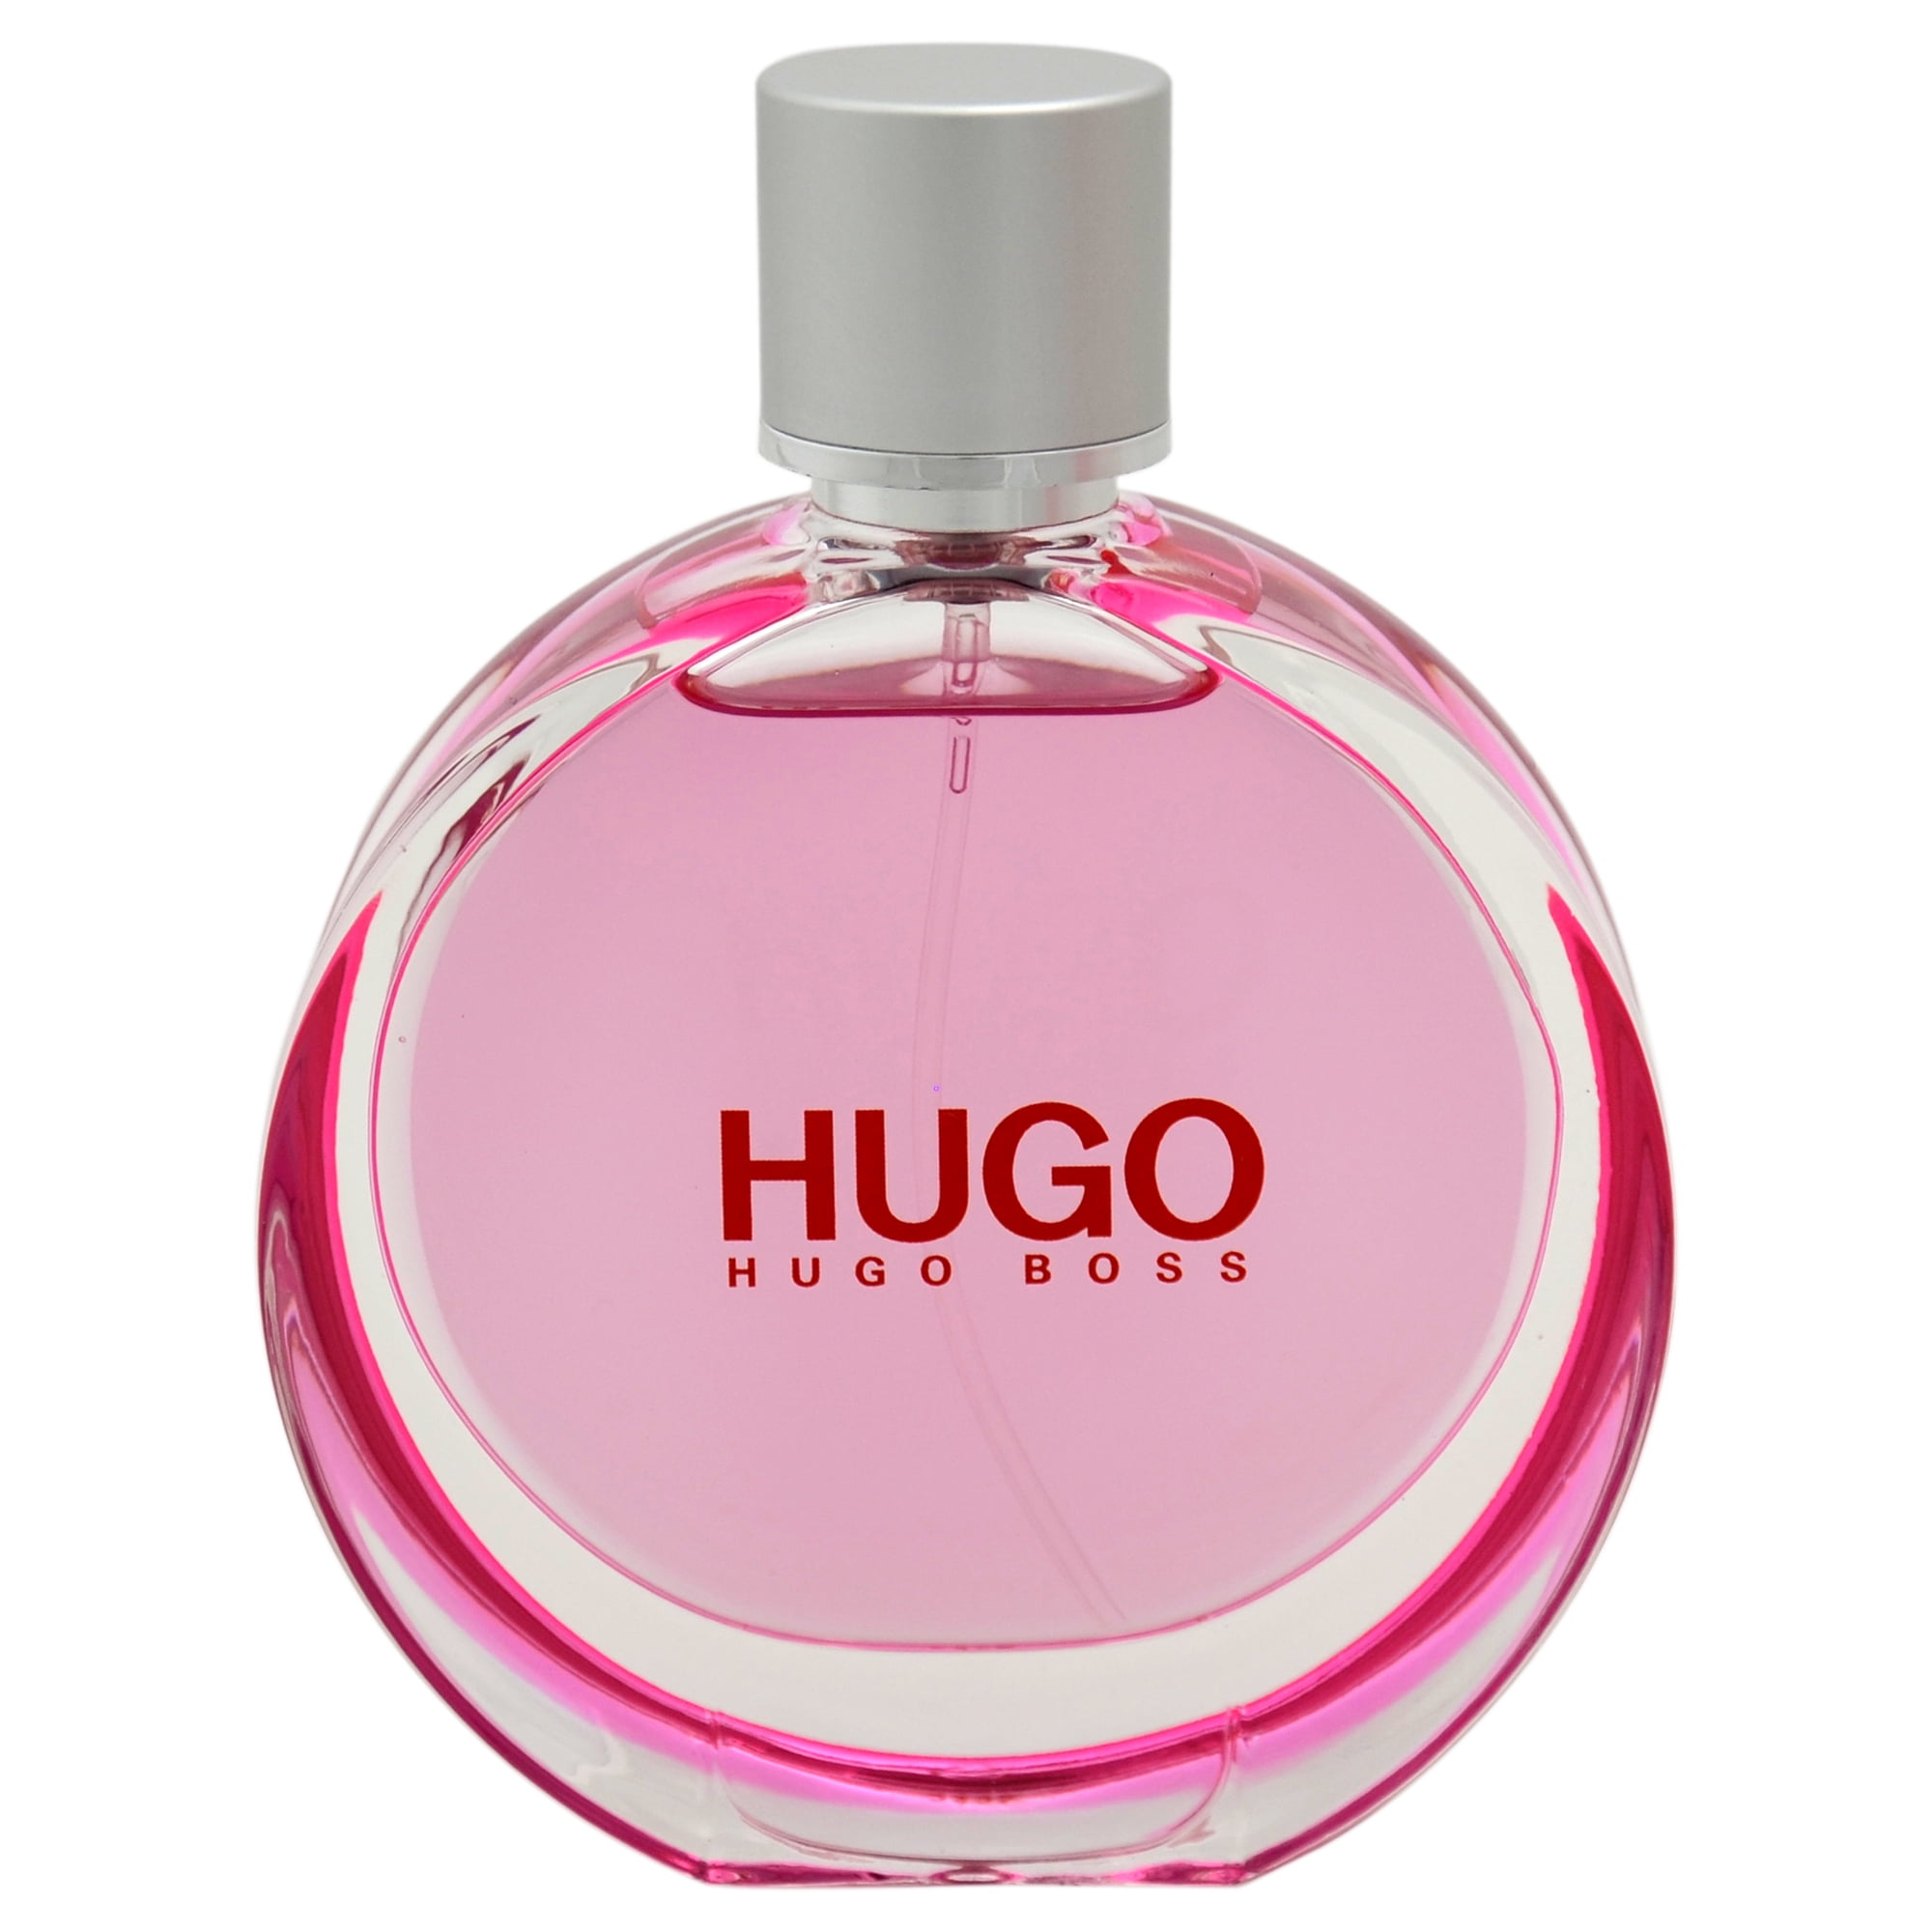 Hugo Boss Hugo Woman Extreme Eau de Parfum Spray 75ml